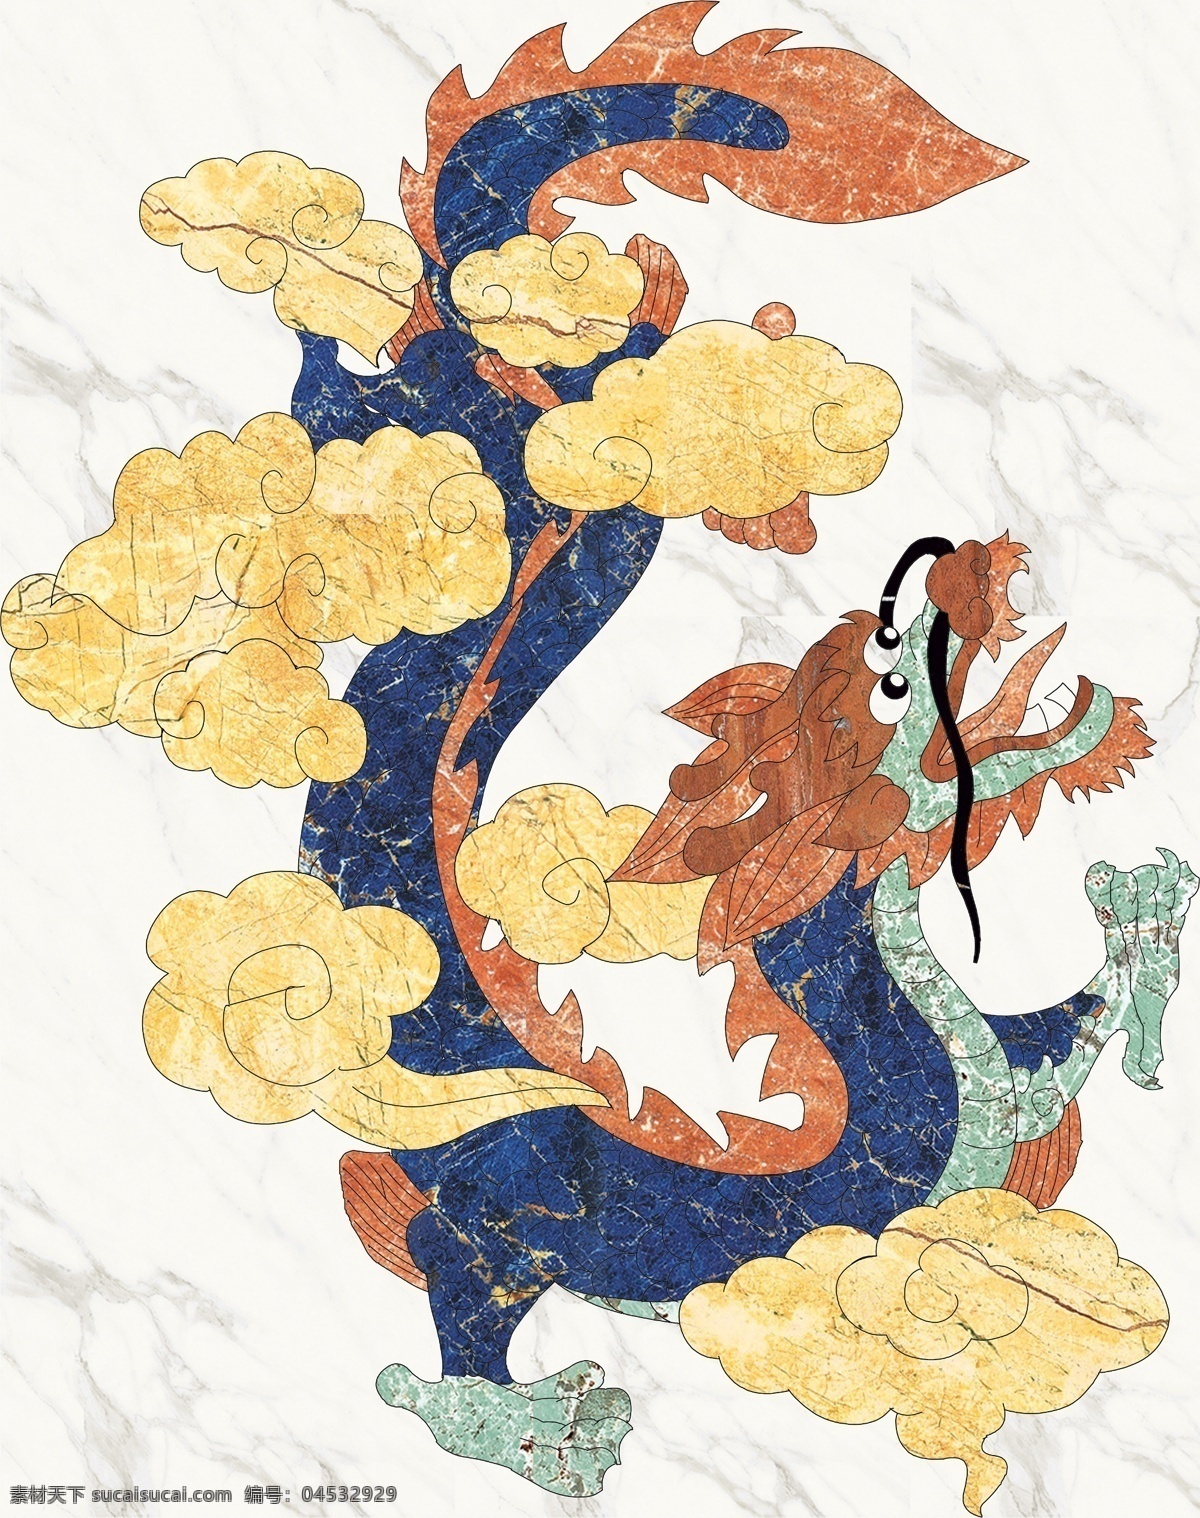 龙 形象 墙 水刀 拼花 中国风 祥云 室内设计 瓷砖拼花 效果图素材 装饰图案